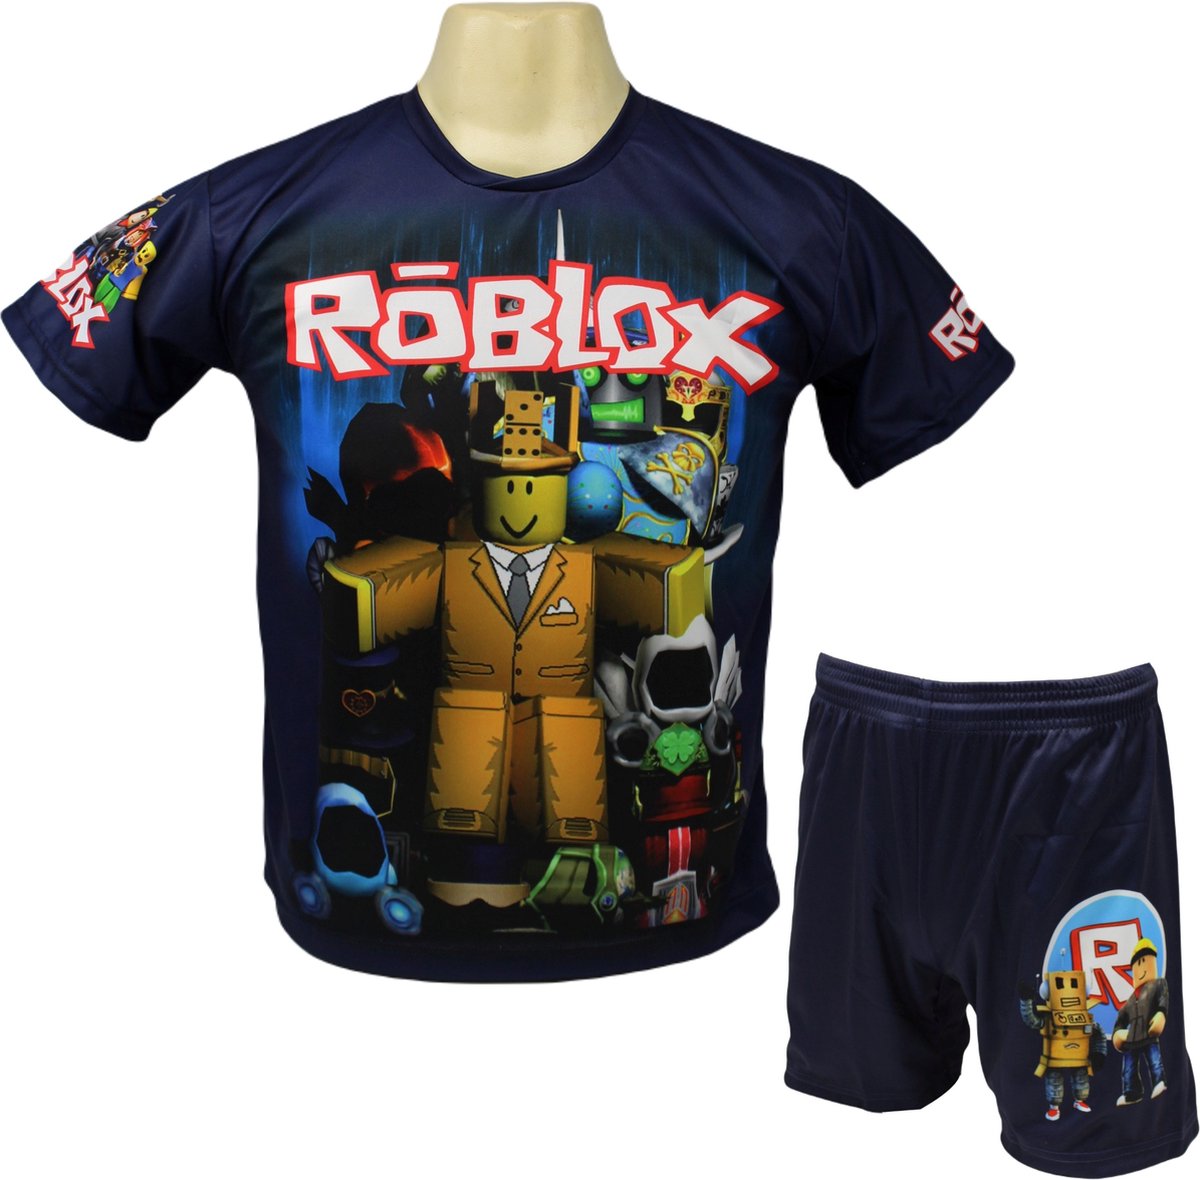 Roblox Shirt en Broekje - Roblox Kleding Tenue - Kinder tot Volwassen maten - Maat M